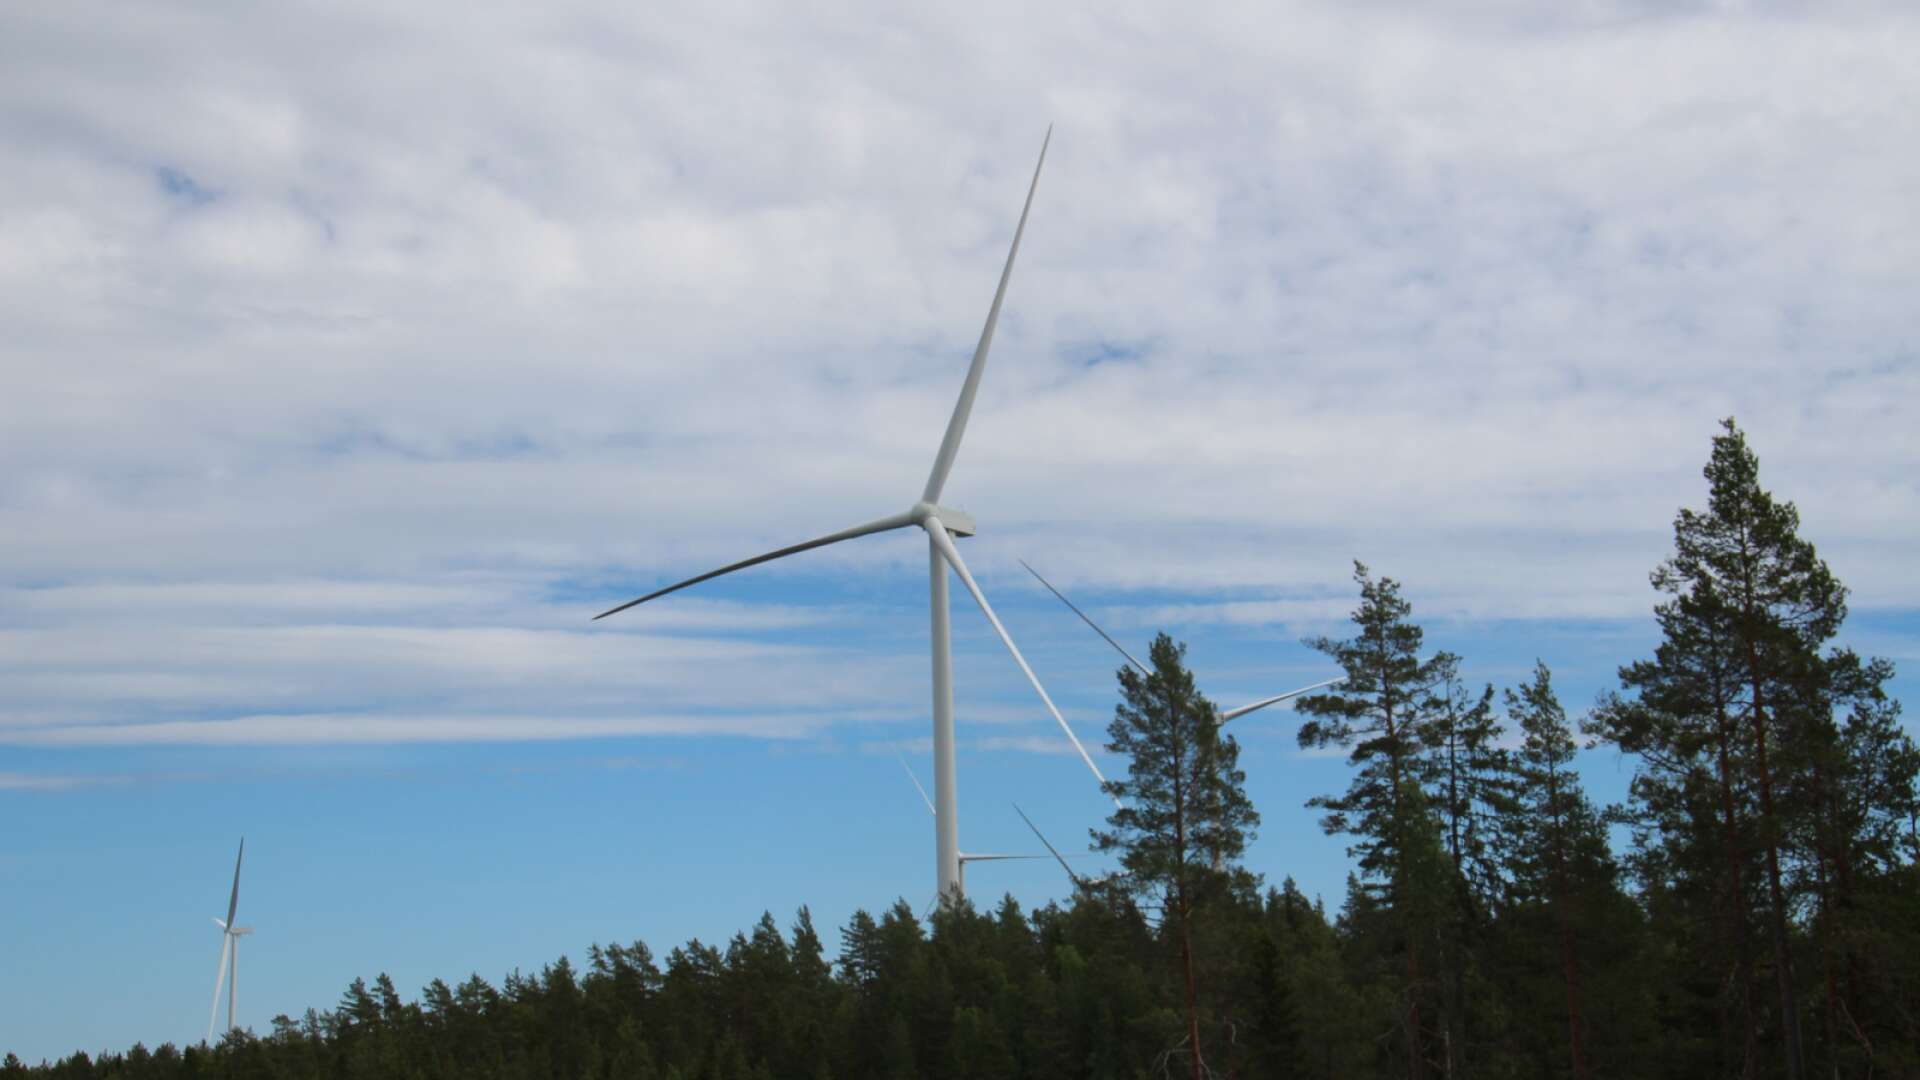 ”Ska kärnkraften och vindkraften byggas ut för att vi skall få billigare energi i Sverige eller för att våra bolag skall kunna exportera mer kilowattimmar?”, skriver insändarskribenten.